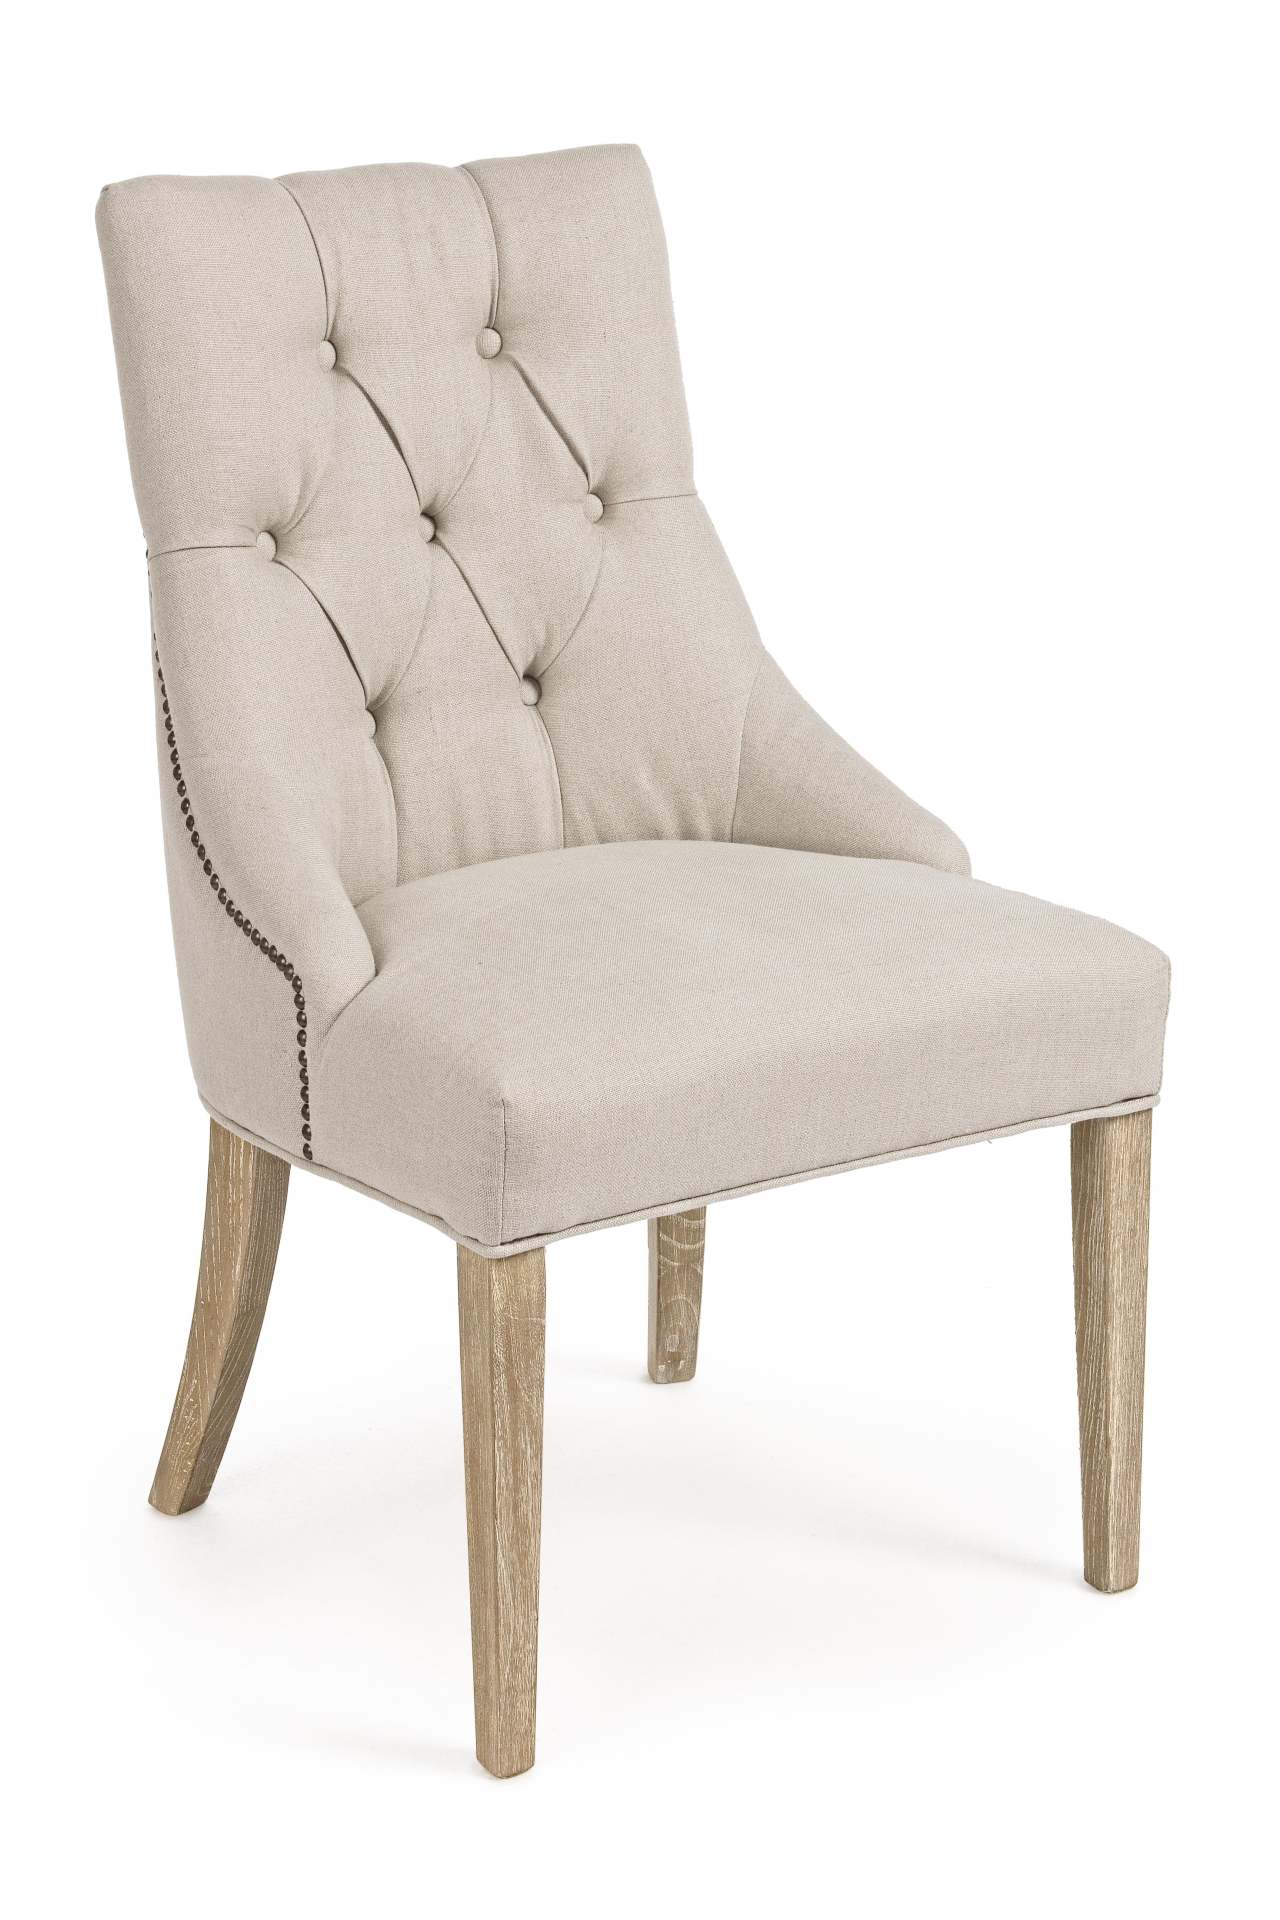 Der Esszimmerstuhl Cally überzeugt mit seinem klassischen Design. Gefertigt wurde der Stuhl aus einem Leinen-Bezug, welcher einen Beige Farbton besitzt. Das Gestell ist aus Eichenholz, welches natürlichen gehalten ist. Die Sitzhöhe beträgt 45 cm.